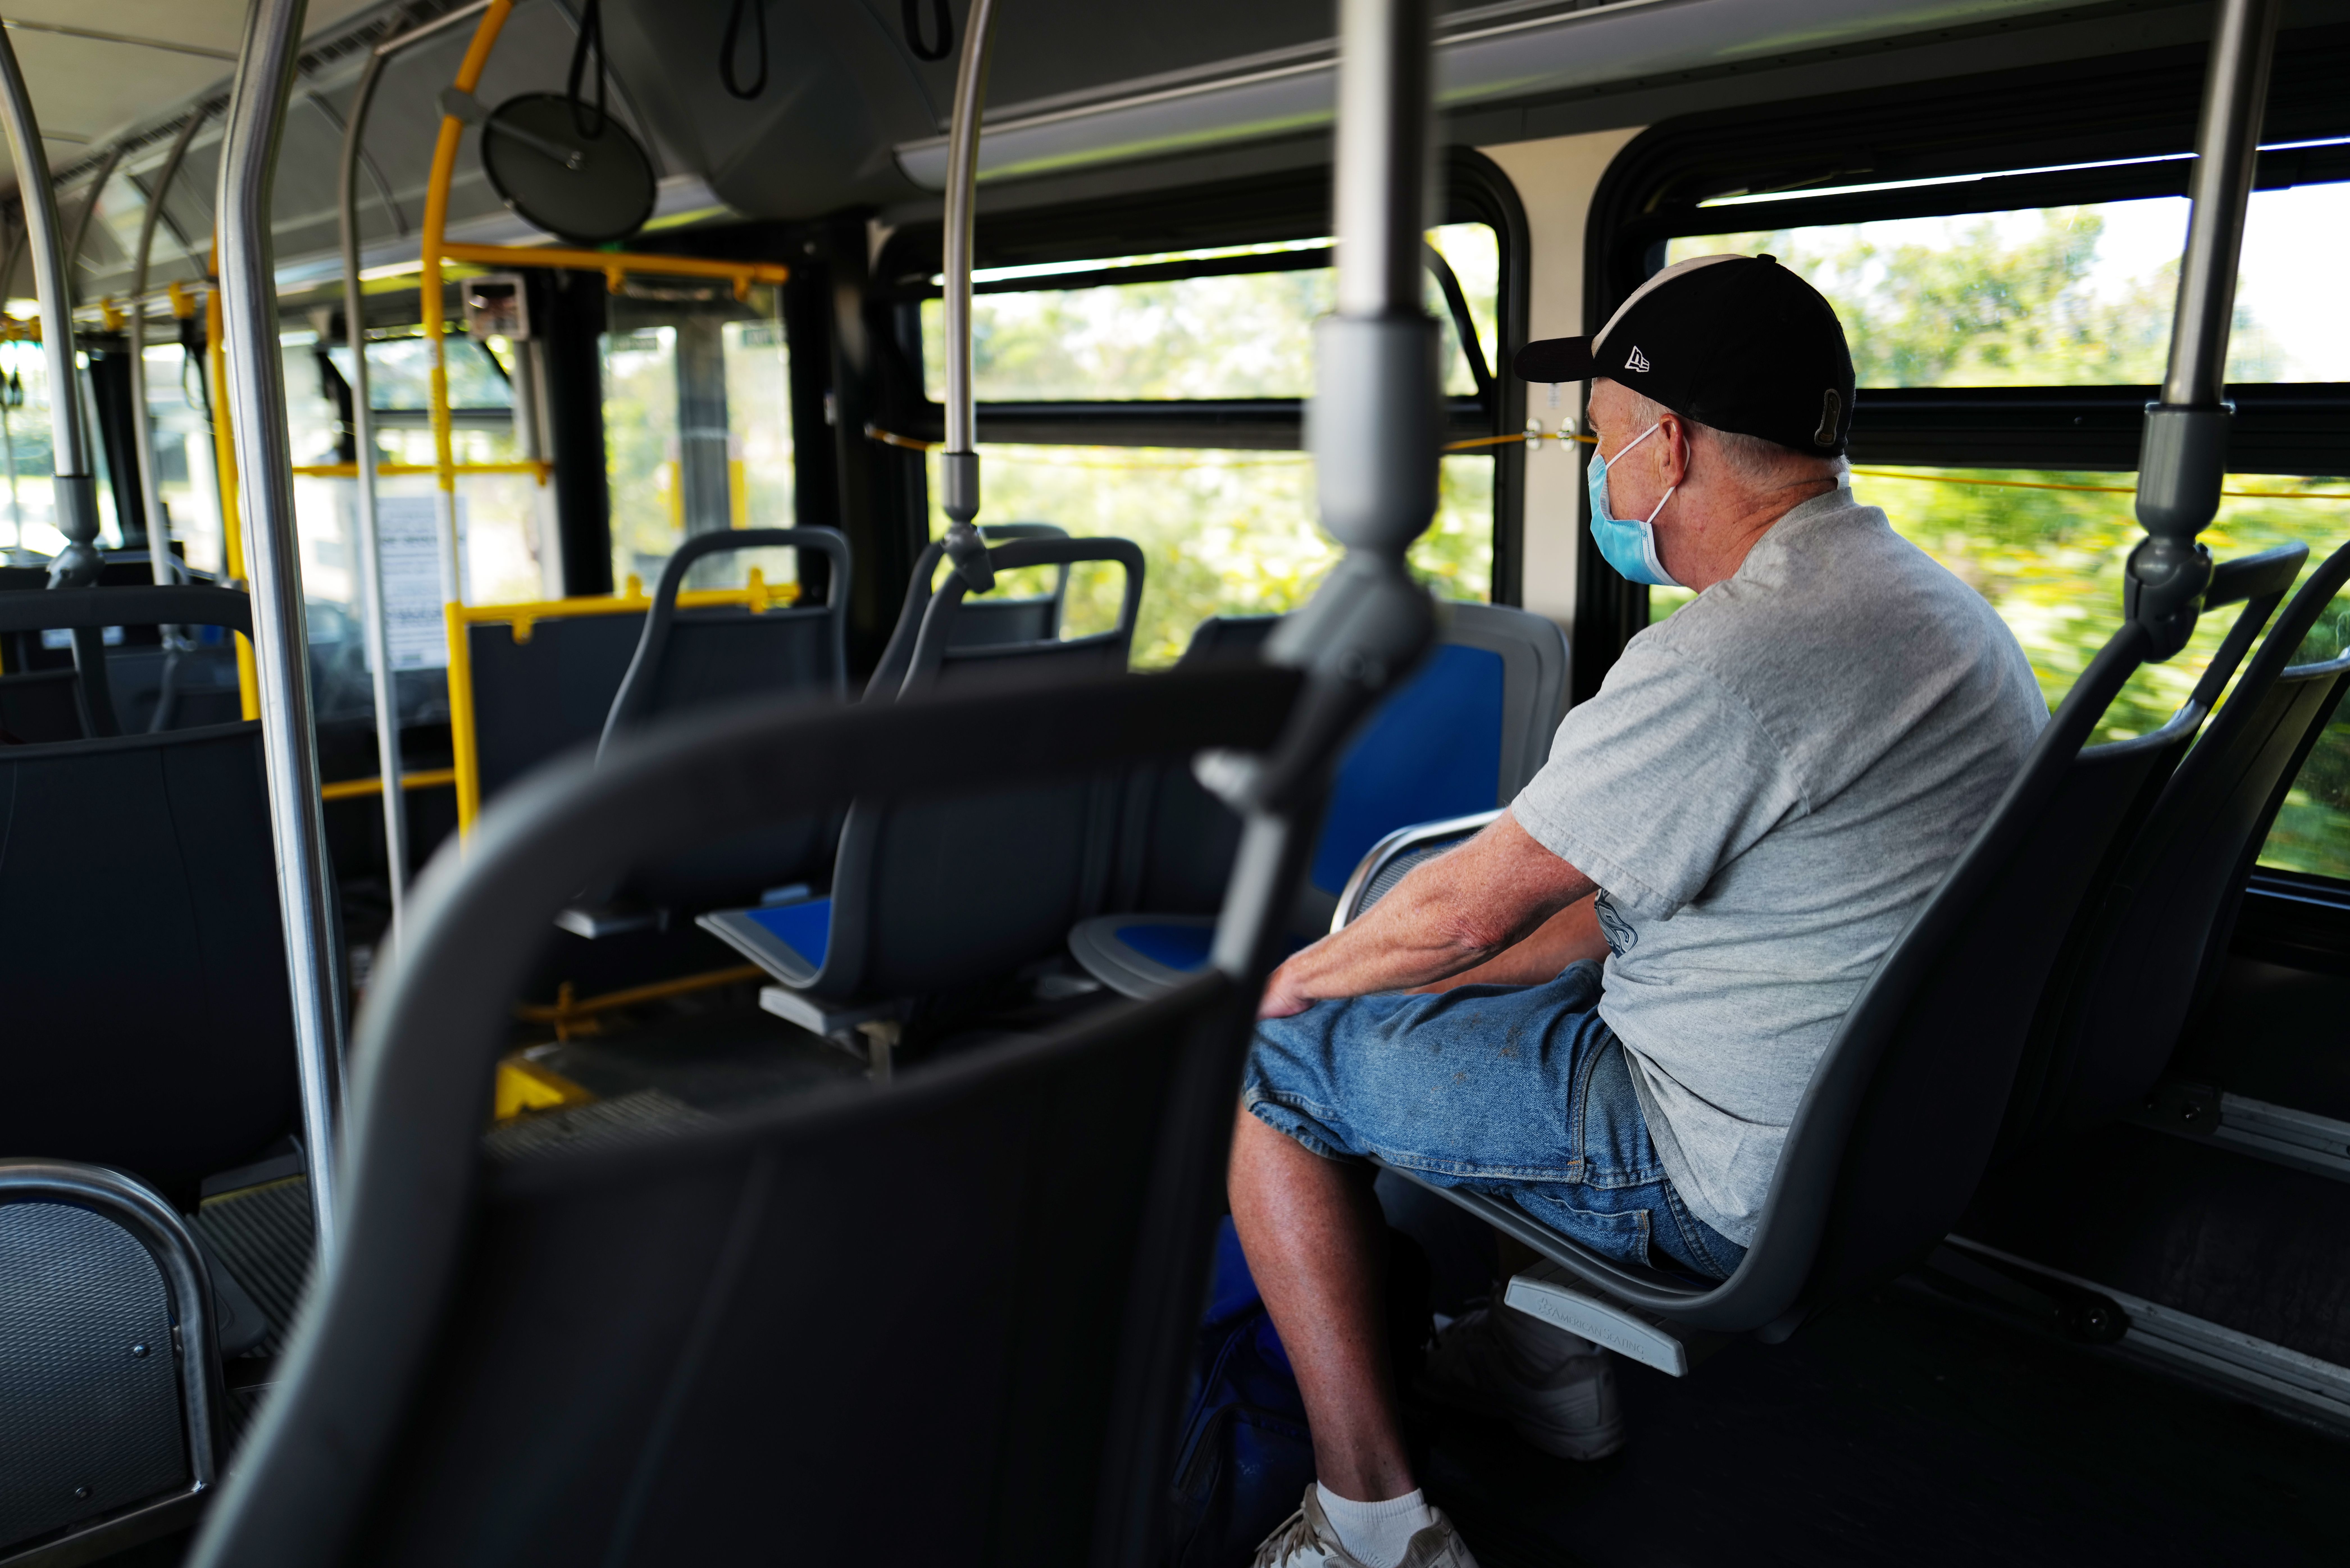 Man On Bus, NY